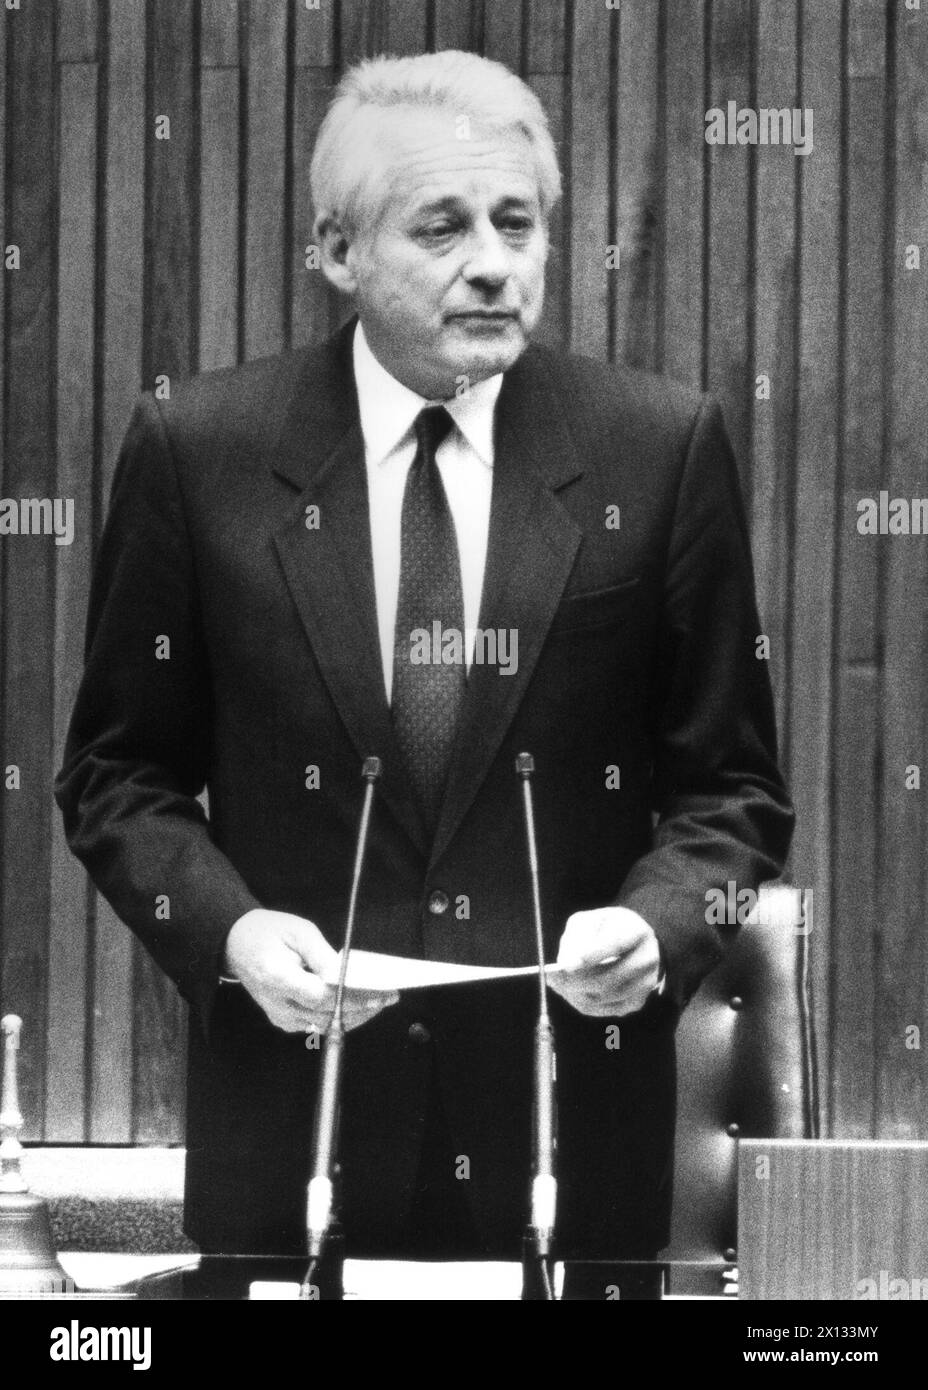 Leopold Gratz, Präsident des österreichischen bundestages, erklärt seinen Rücktritt in der Sitzung am 25. Januar 1989. - 19890125 PD0004 - Rechteinfo: Rechte verwaltet (RM) Stockfoto